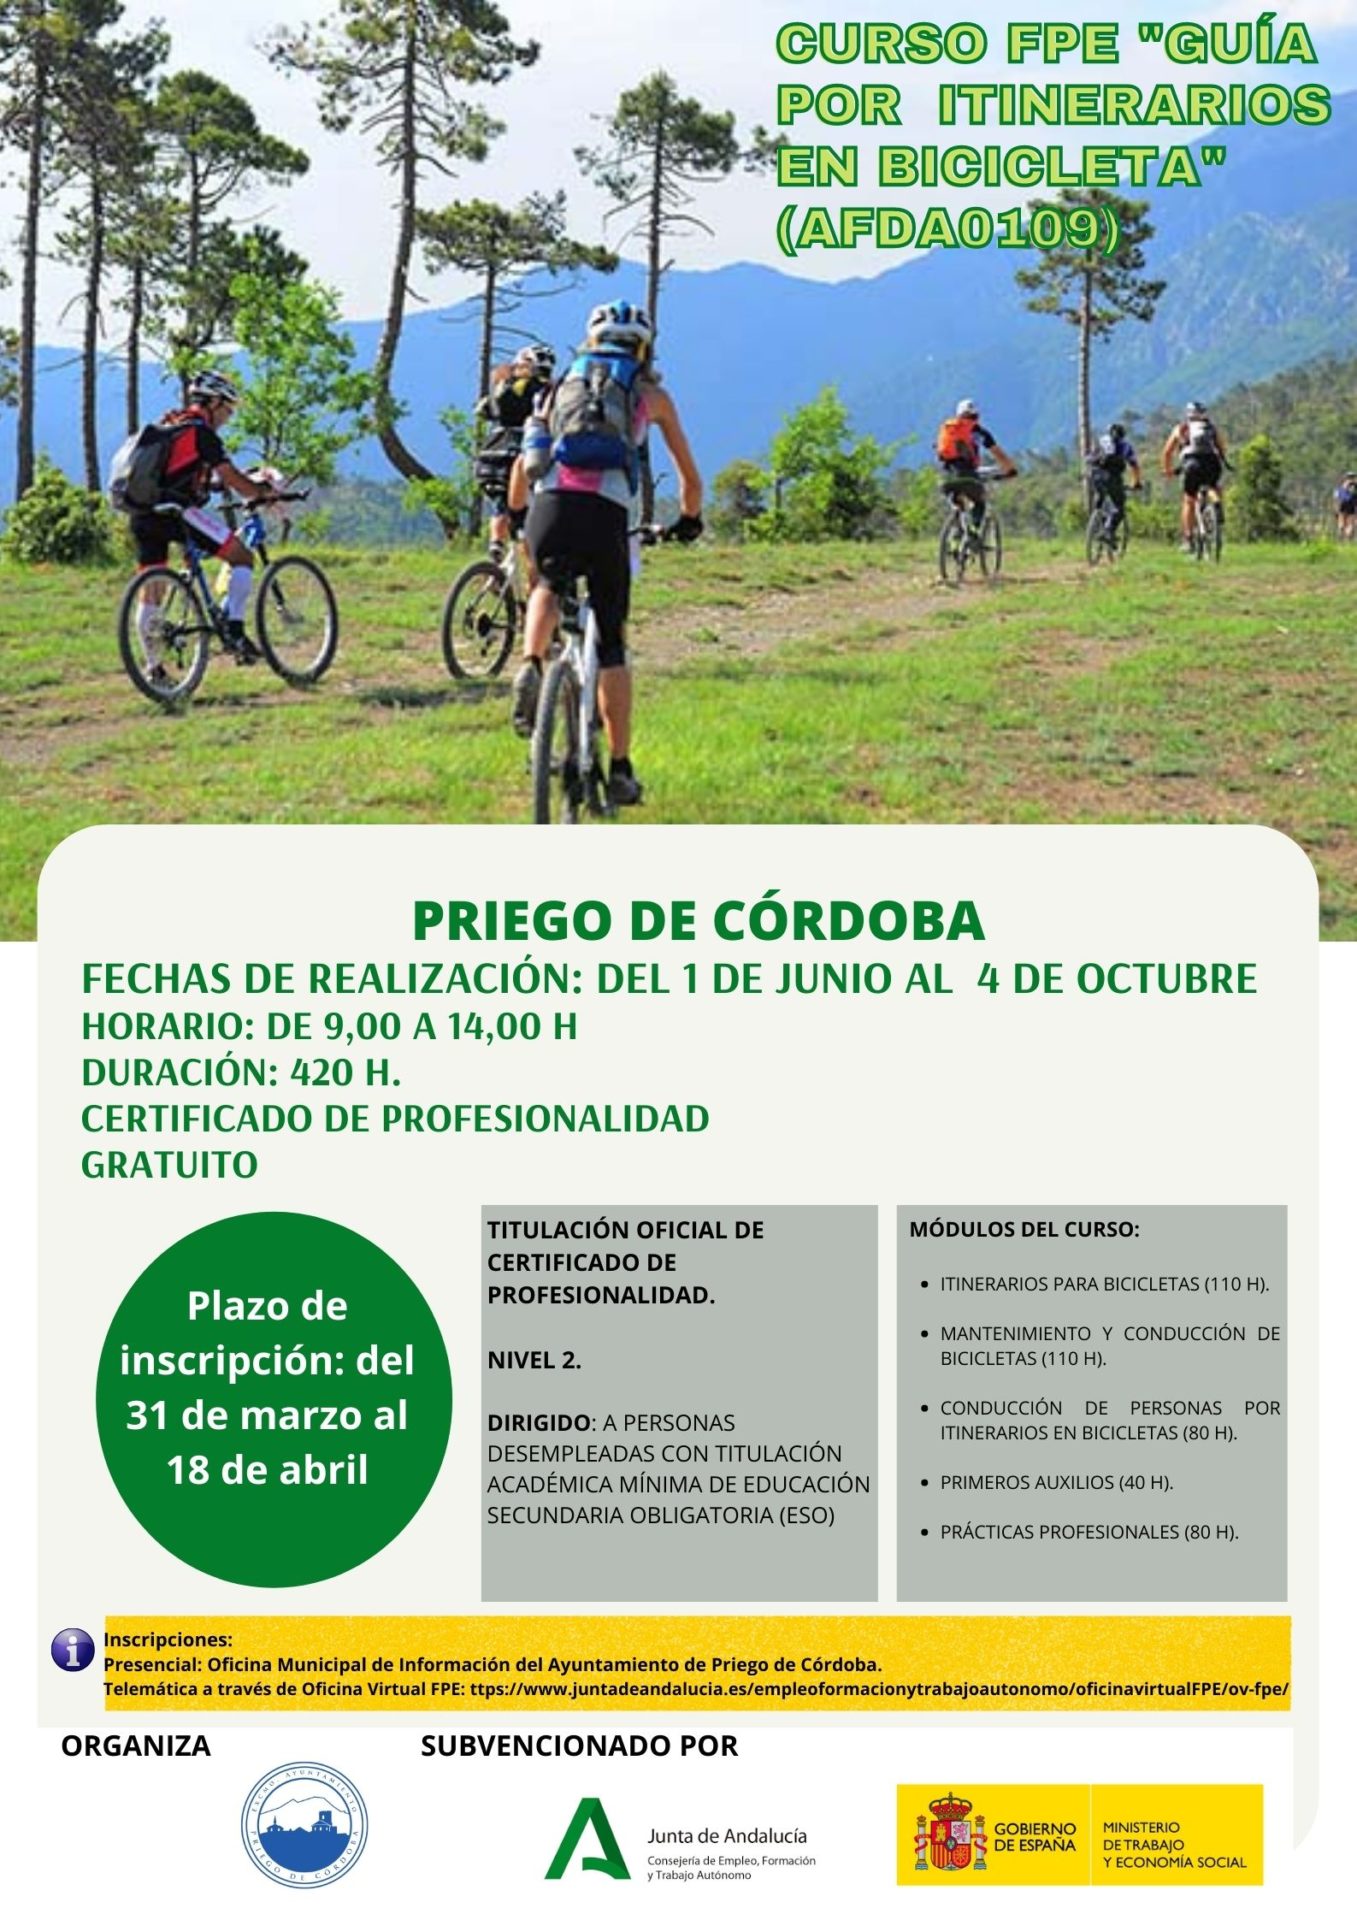 Curso de FPE "Guía por Itinerarios en Bicicleta". Fechas de realización: del 1 de junio al 4 de octubre. 1